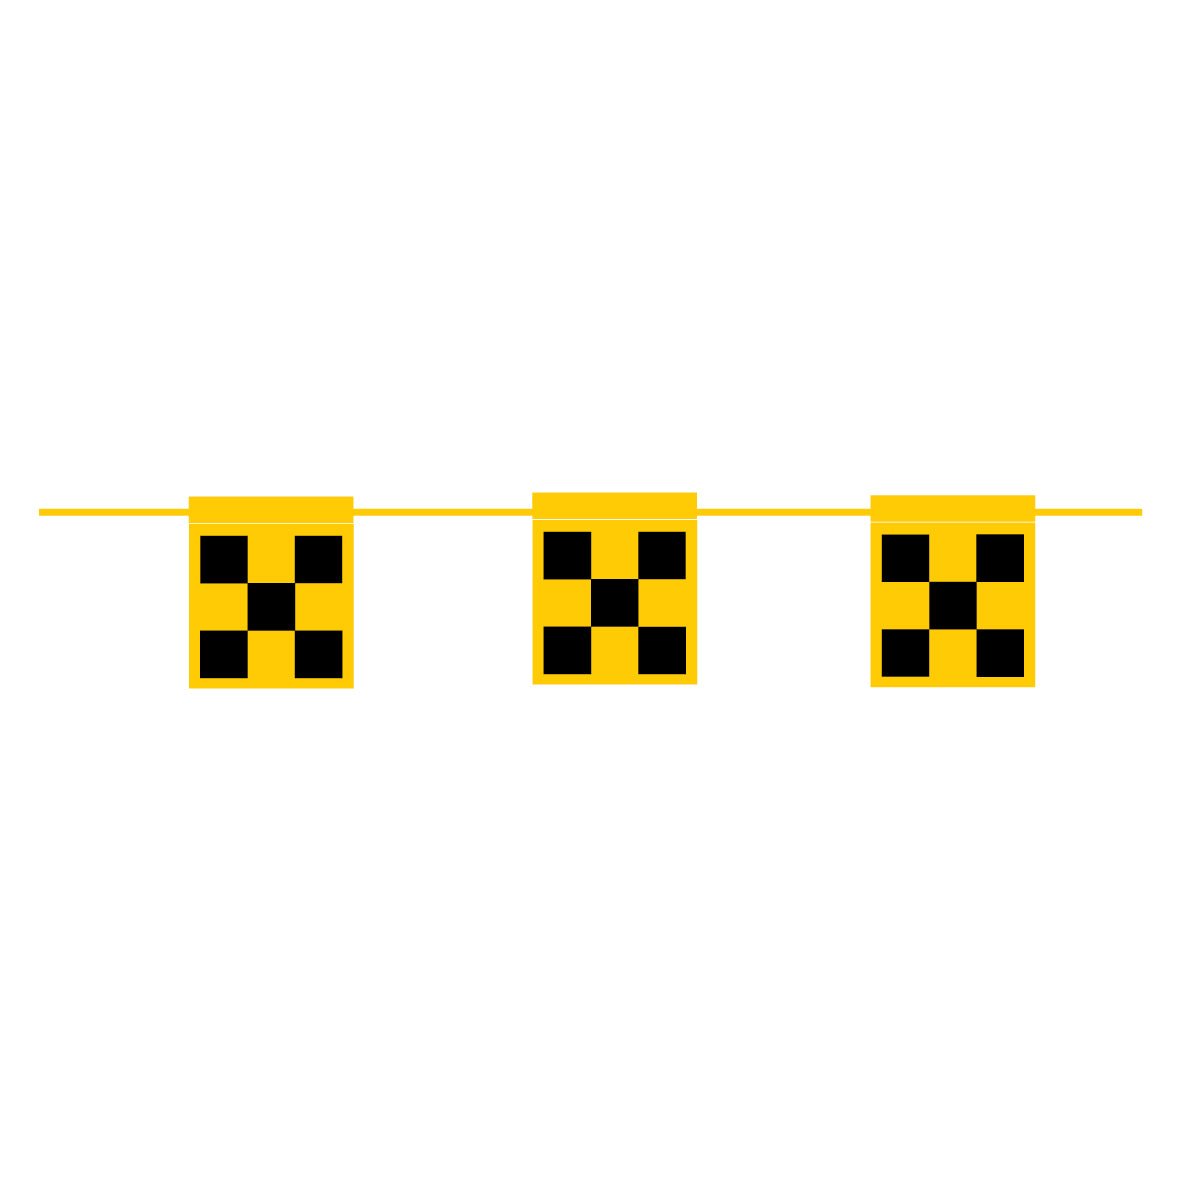 Wimpel-Absperrungen, 1.0350, Karo gelb-schwarz, doppelseitig, 12.5/15 cm, l =27 m, Seil ø 7 mm gelb, Anzahl Flaggen: 14